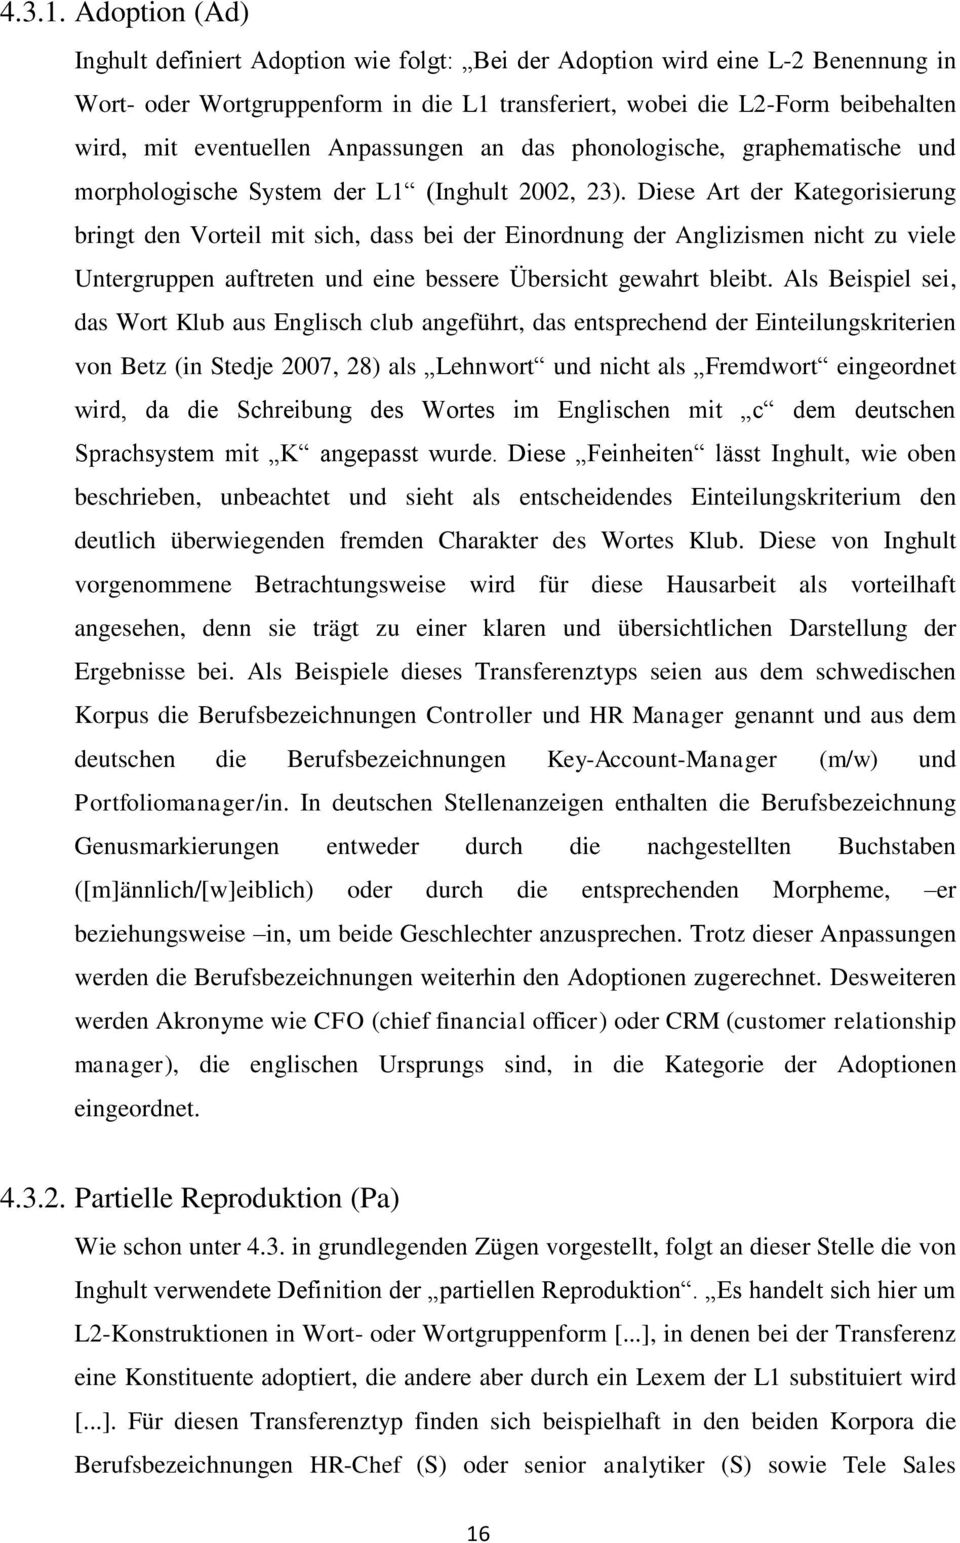 Anpassungen an das phonologische, graphematische und morphologische System der L1 (Inghult 2002, 23).